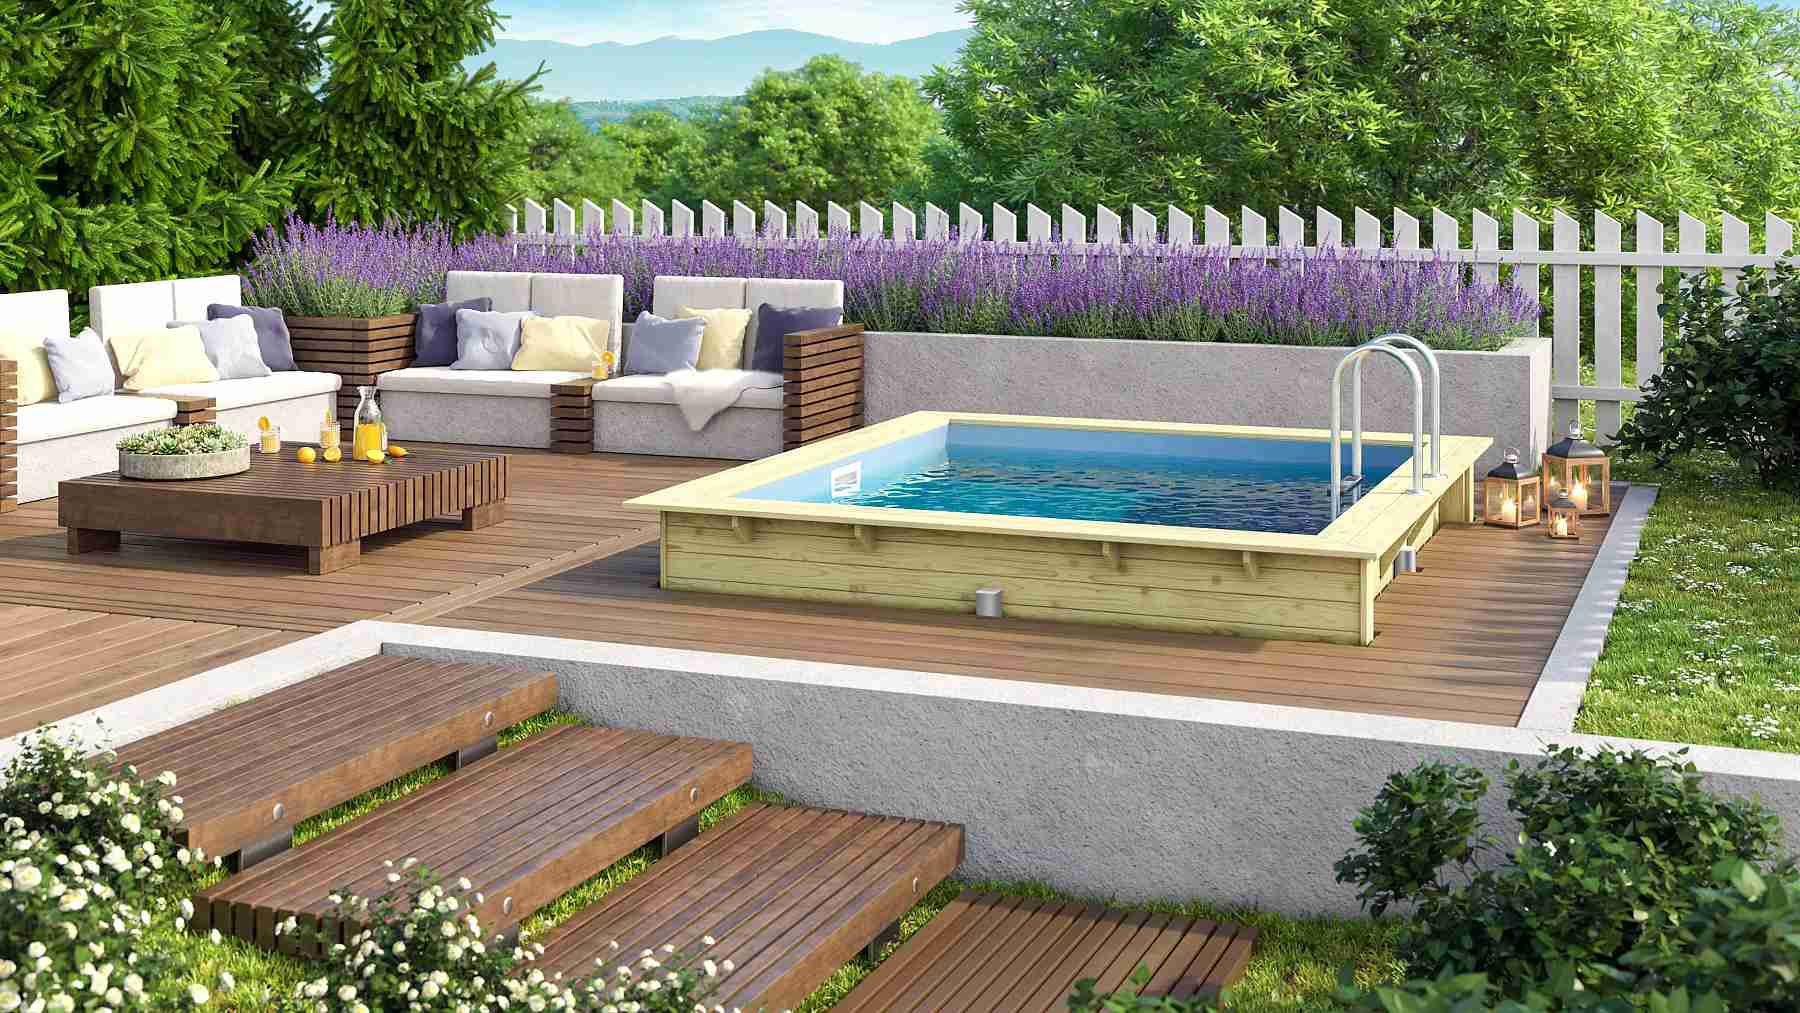 obdelníkový bazén KARIBU model 1 (23631) 3,5 x 3,2 m LG2017